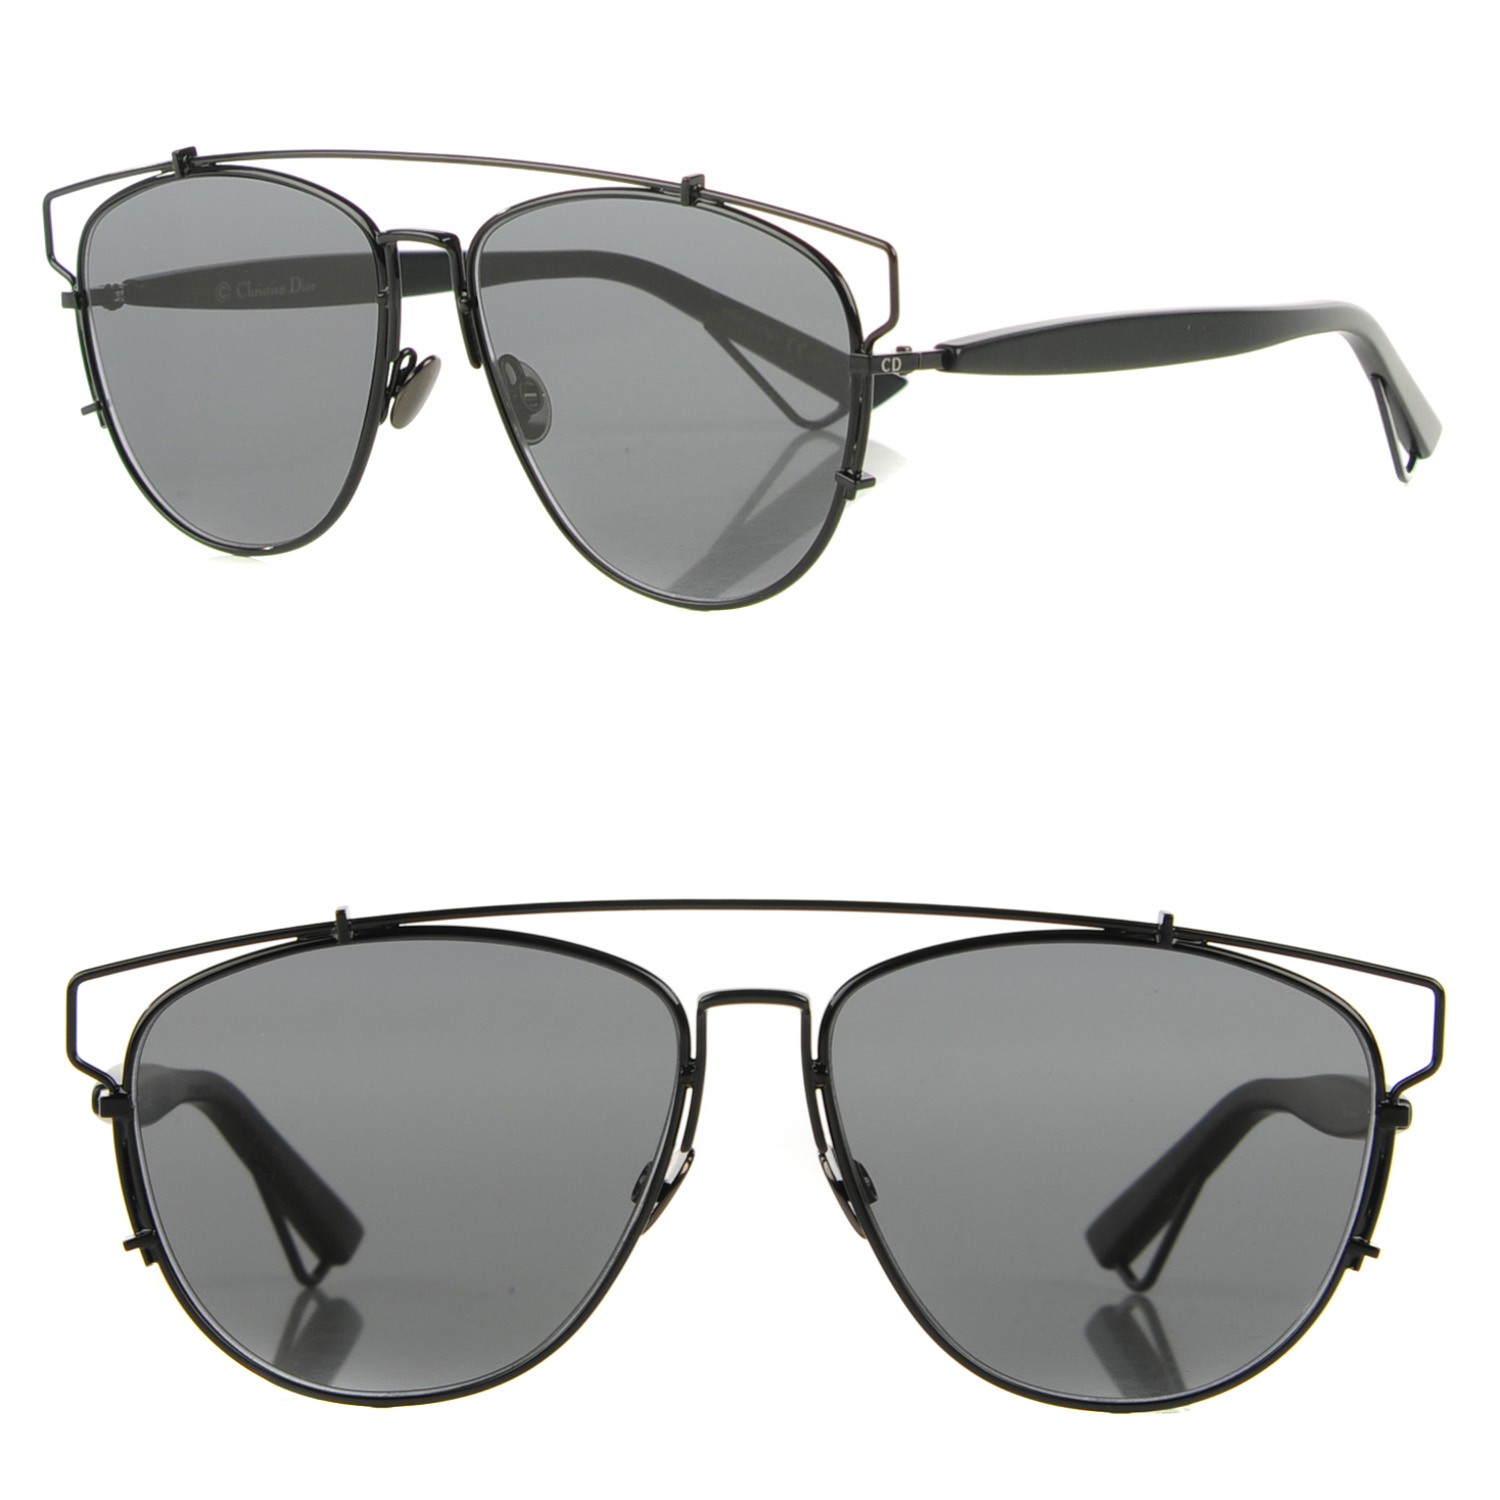 dior technologic sunglasses black